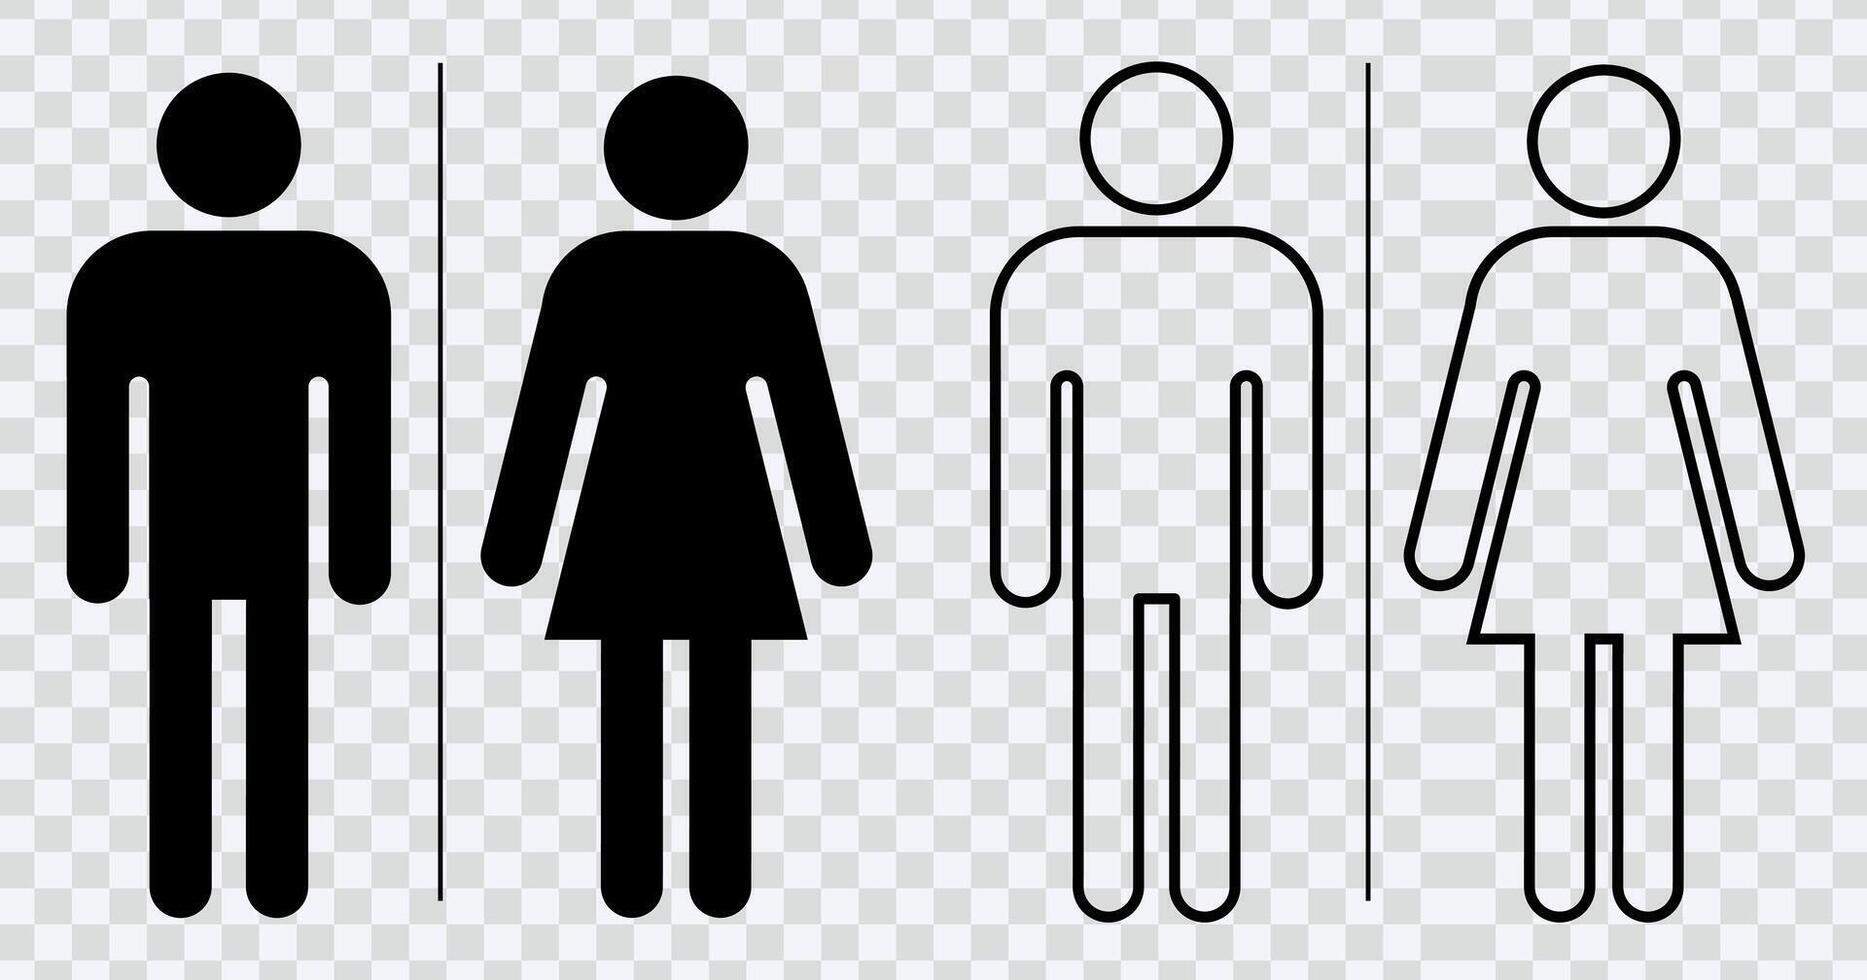 hohe Qualität Toilette Symbol zum Universal- Toilette Beschilderung, mit beide männlich und weiblich Symbole.Mann, Frau, Mutter mit Baby und behindert Silhouetten Sammlung. perfekt zum vielfältig Design Bedürfnisse vektor